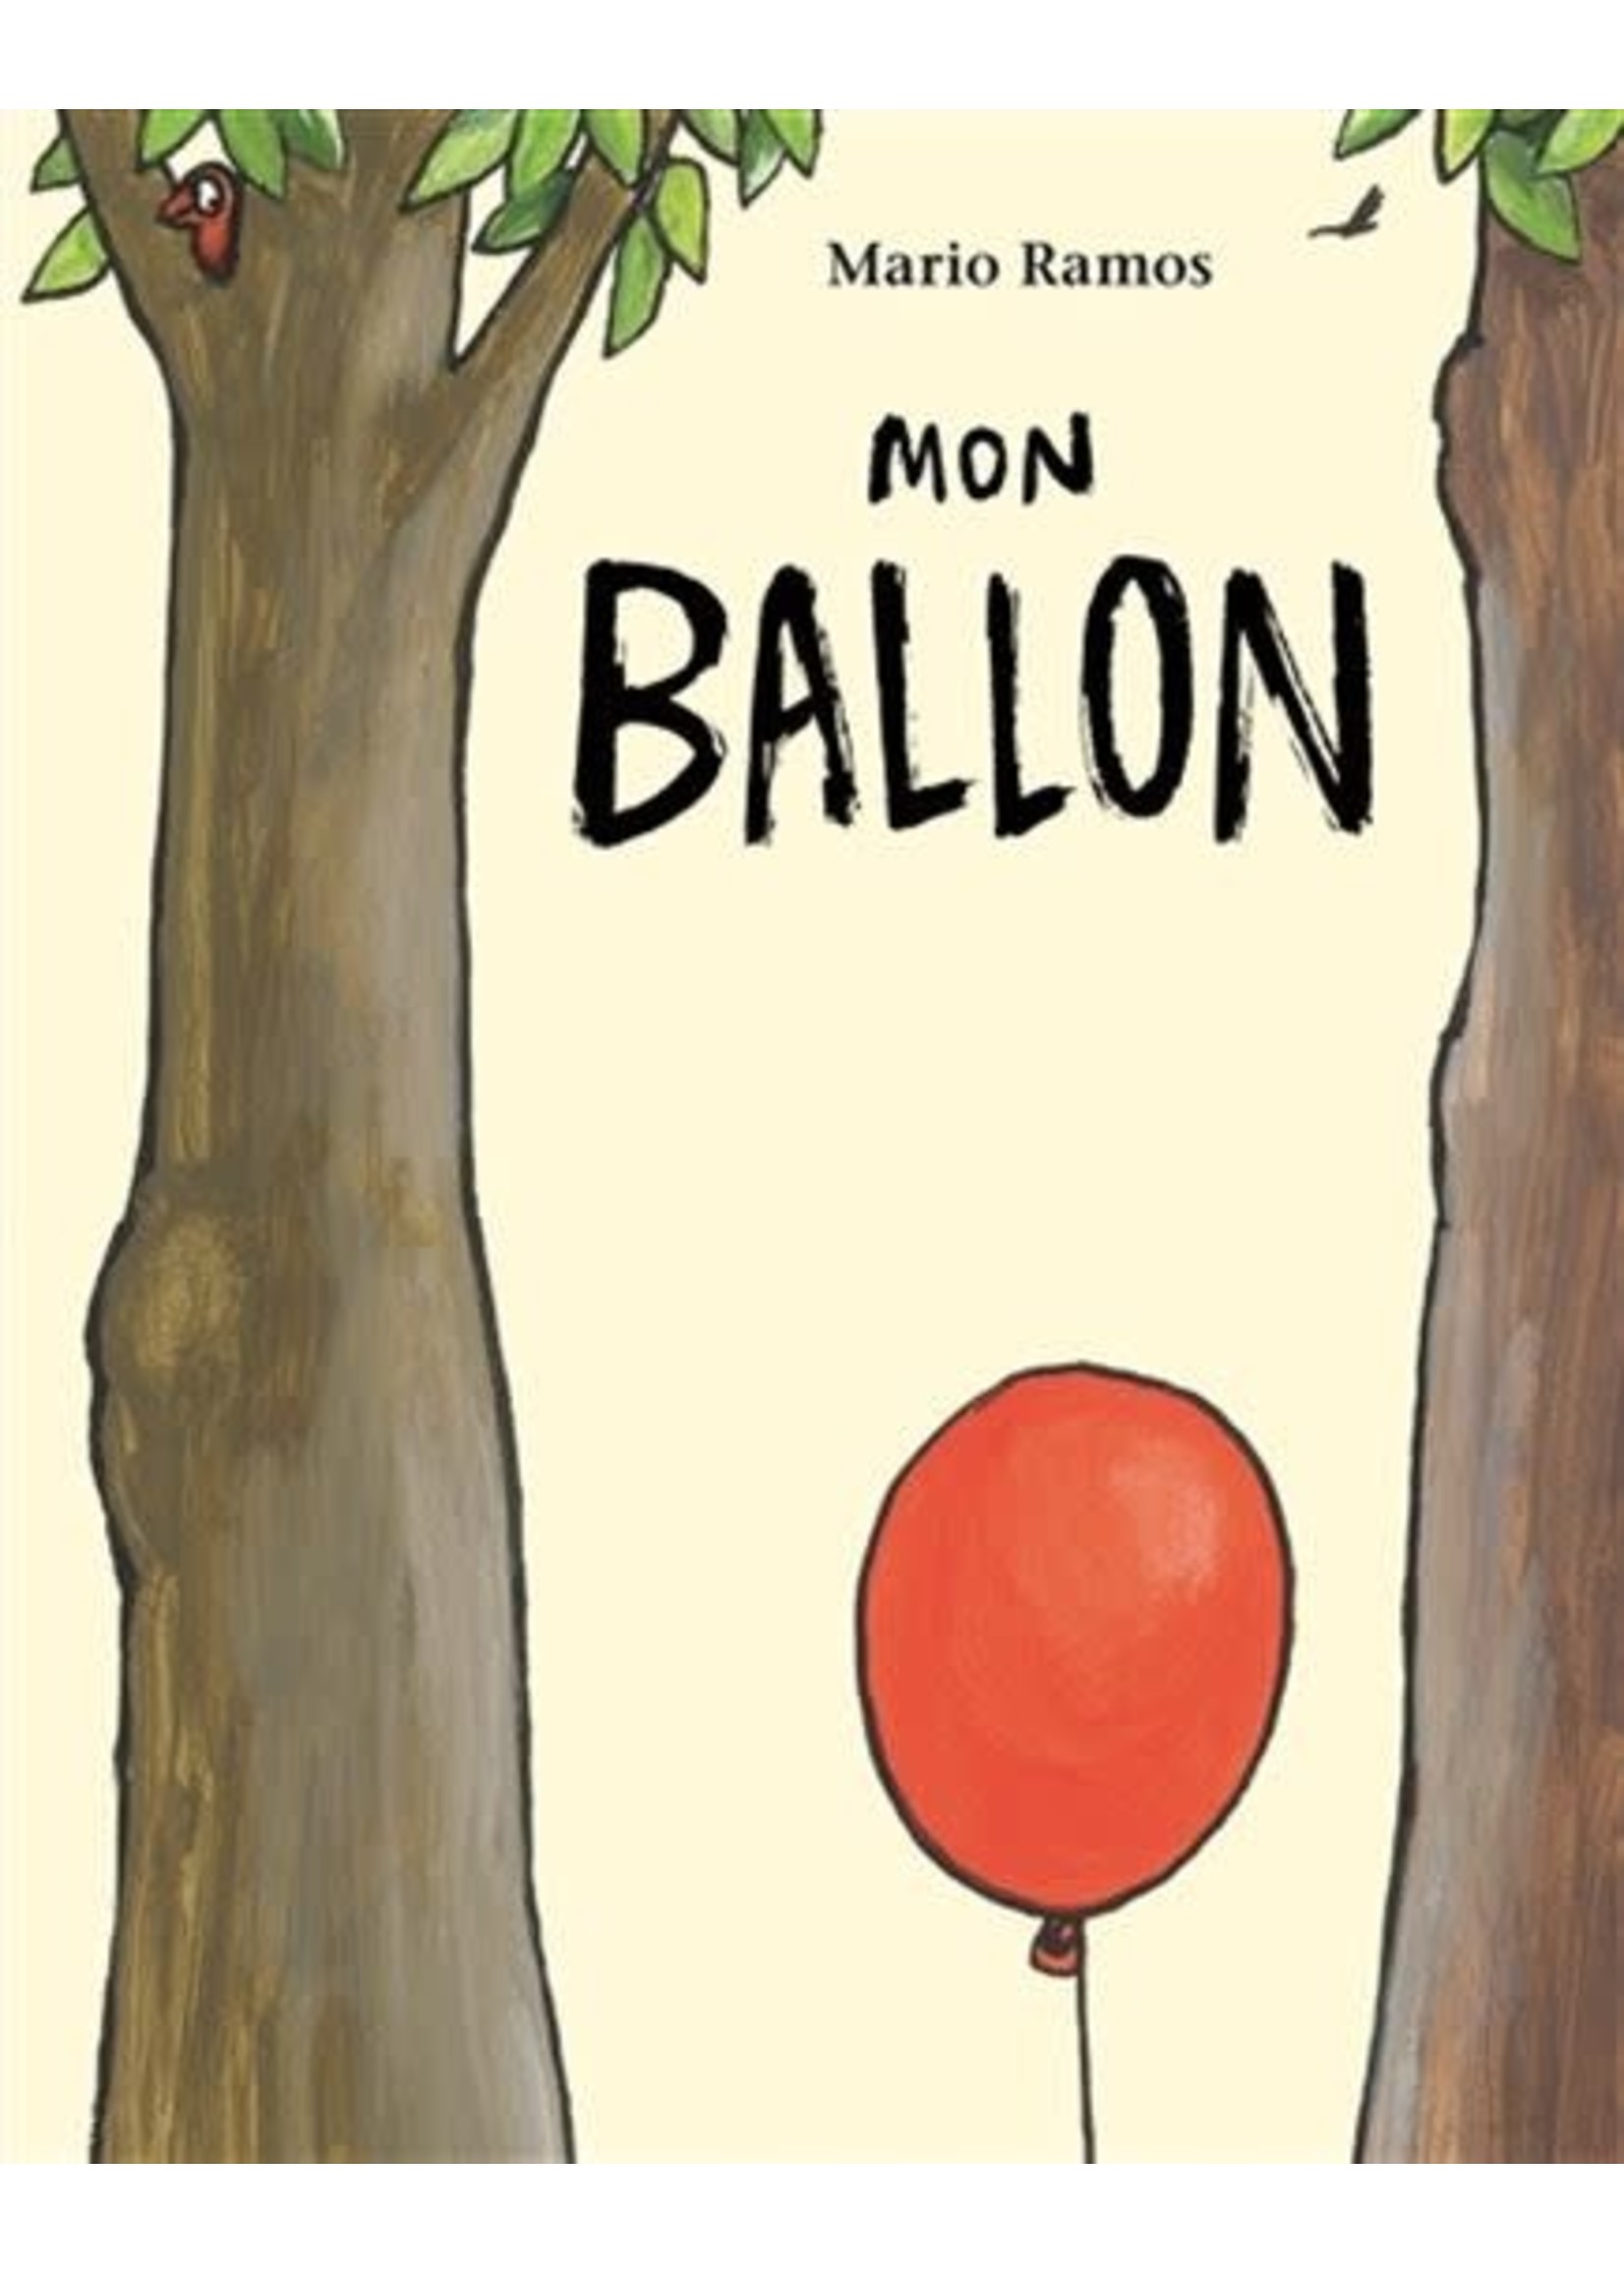 Mon ballon by Mario Ramos